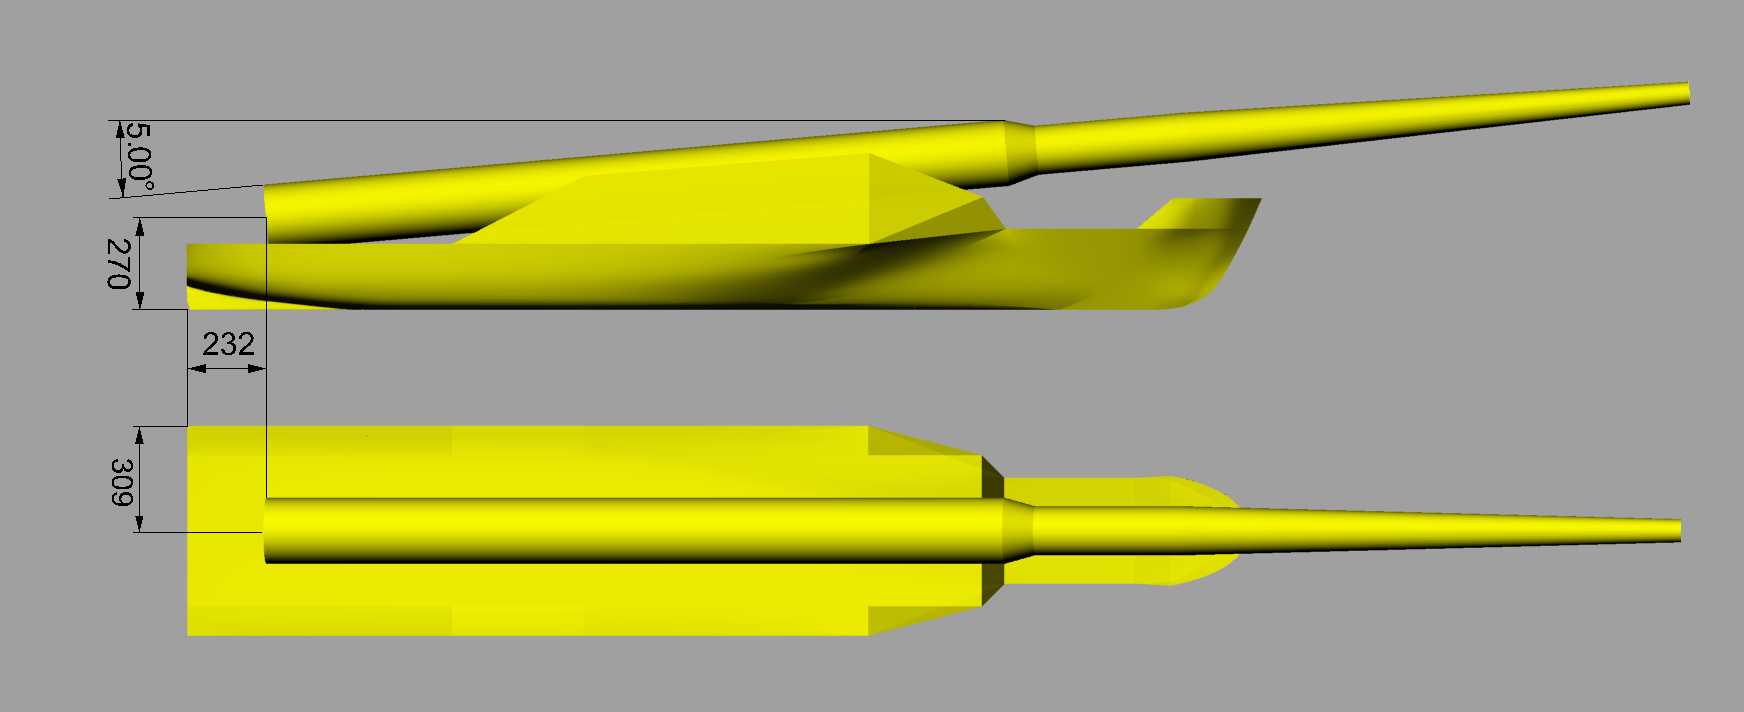 Kapittel 2 Modellforsøk 2.3.3 Plassering av Hywind på Windflip Under sea-keeping forsøket var Hywind plassert på Windflip som vist i Figur 9.